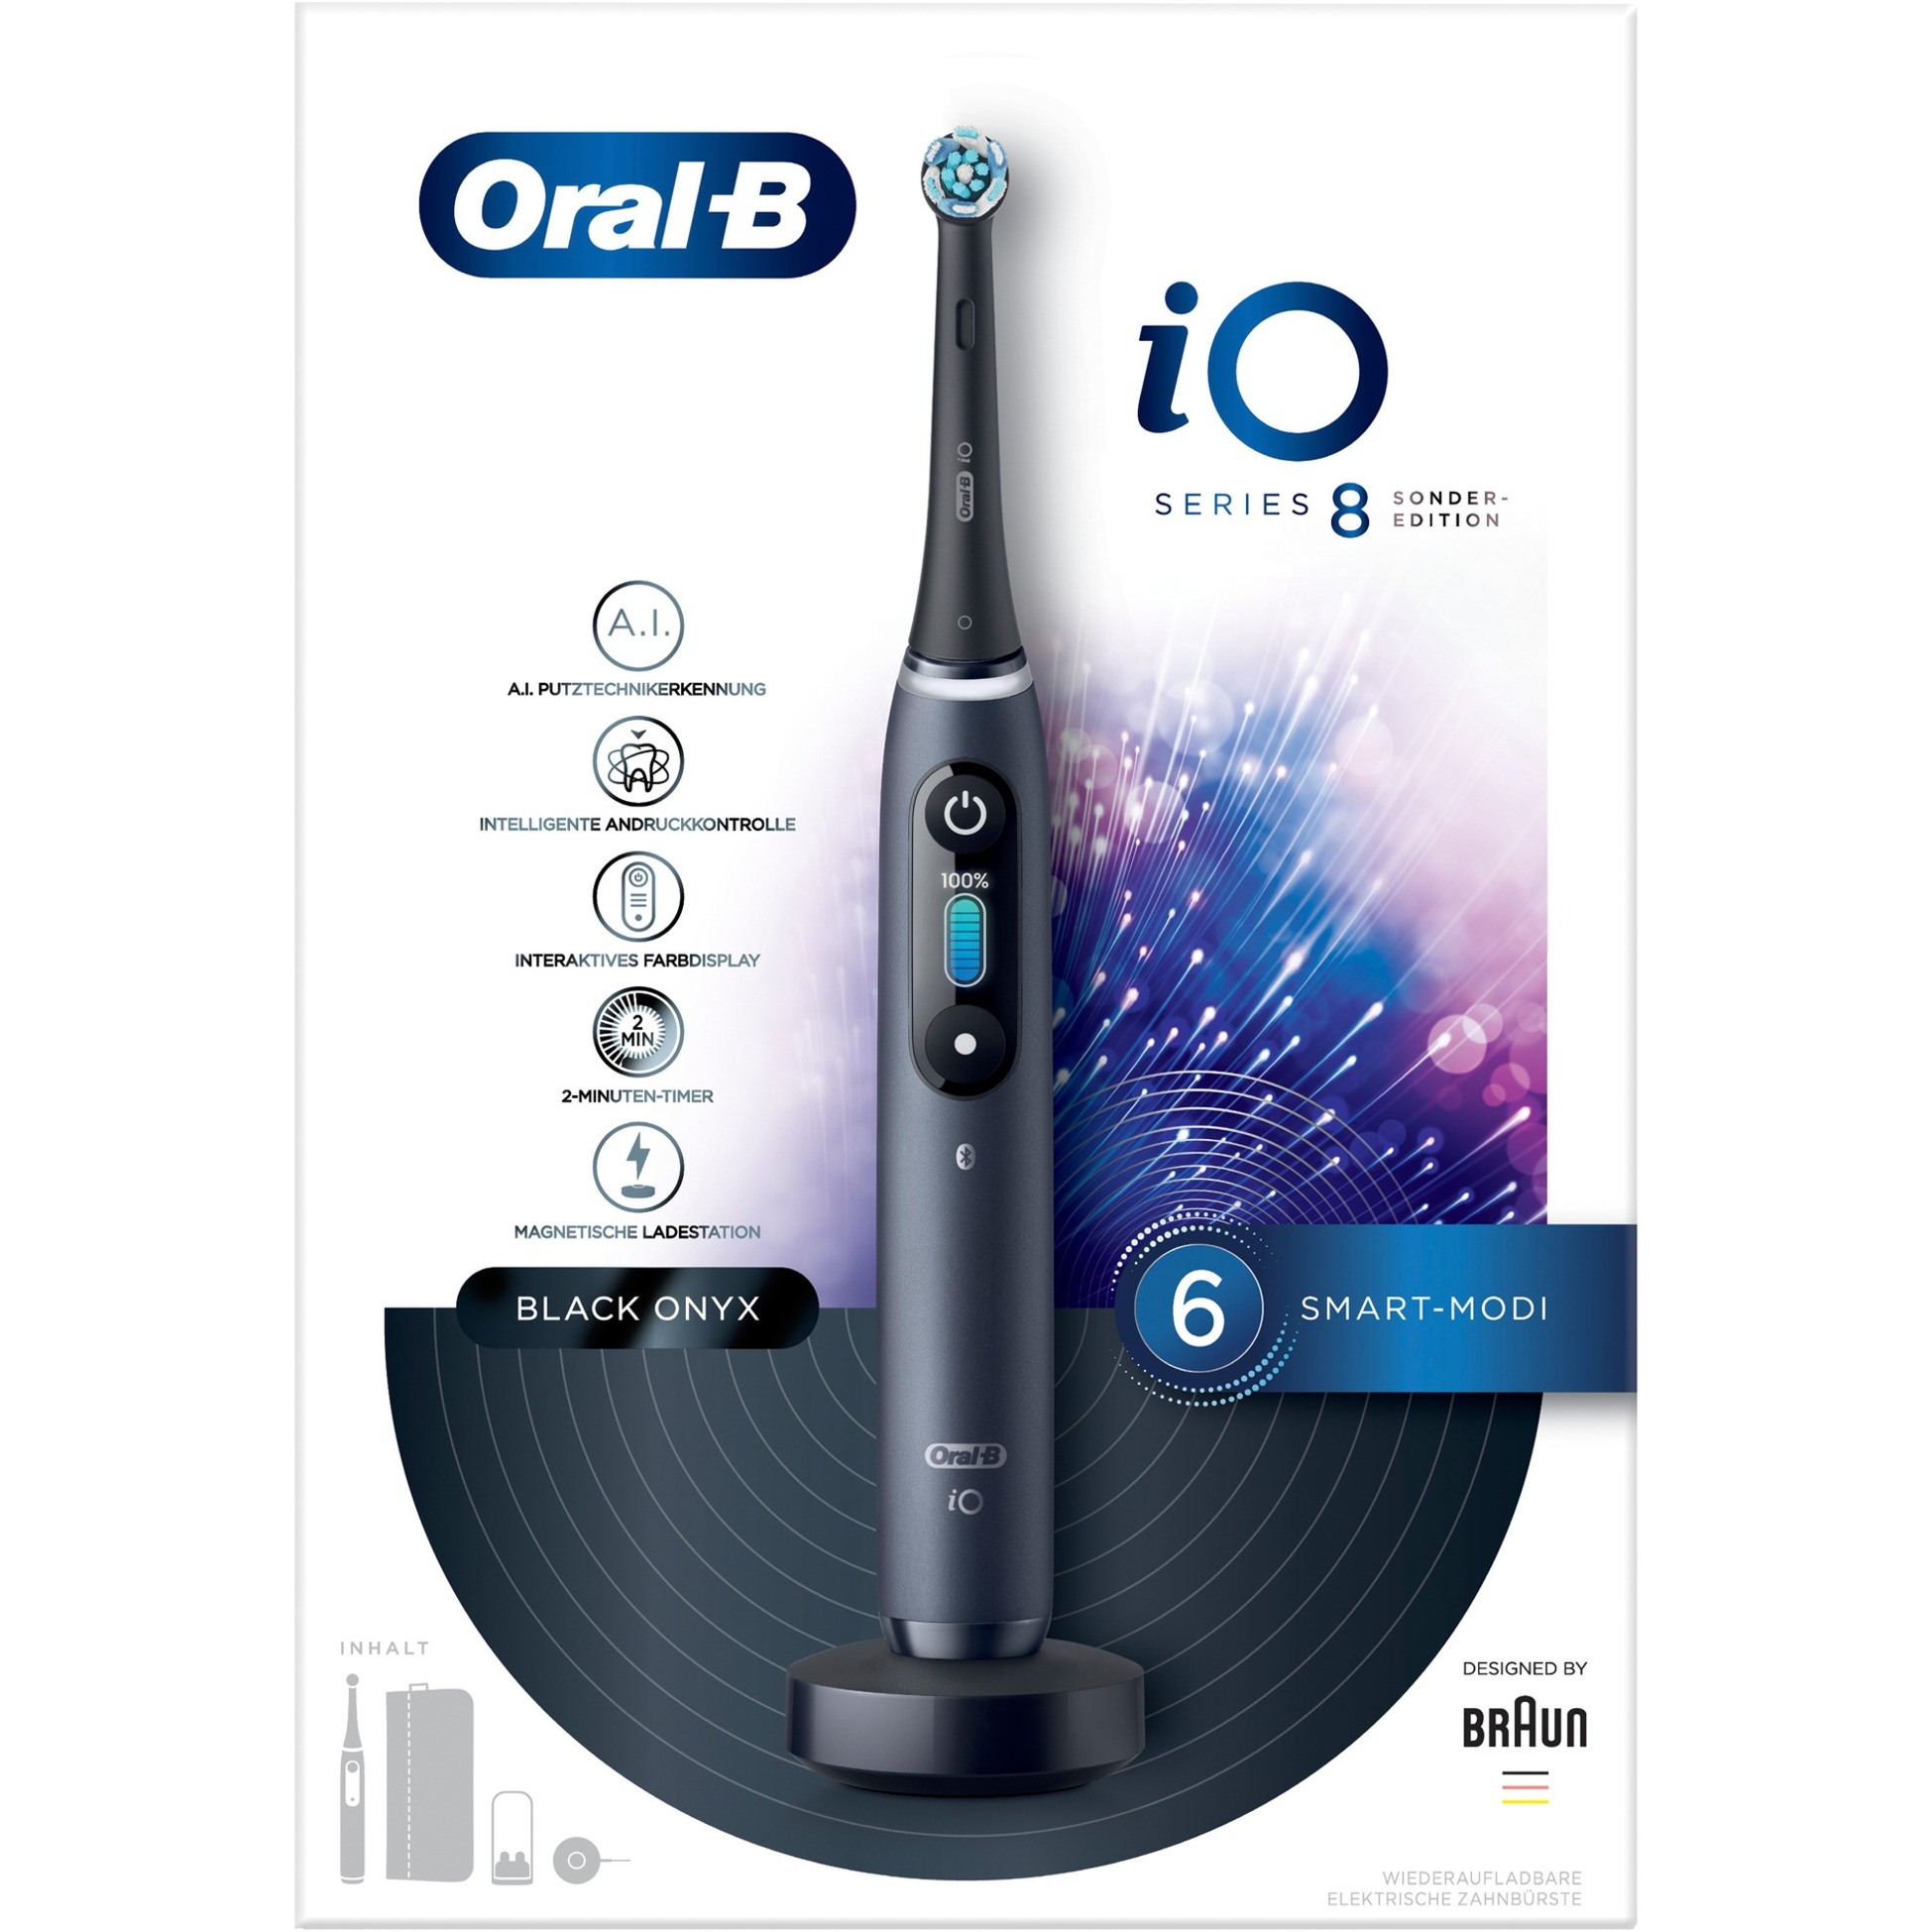 Image of Alternate - Oral-B iO Series 8 Special Edition, Elektrische Zahnbürste online einkaufen bei Alternate